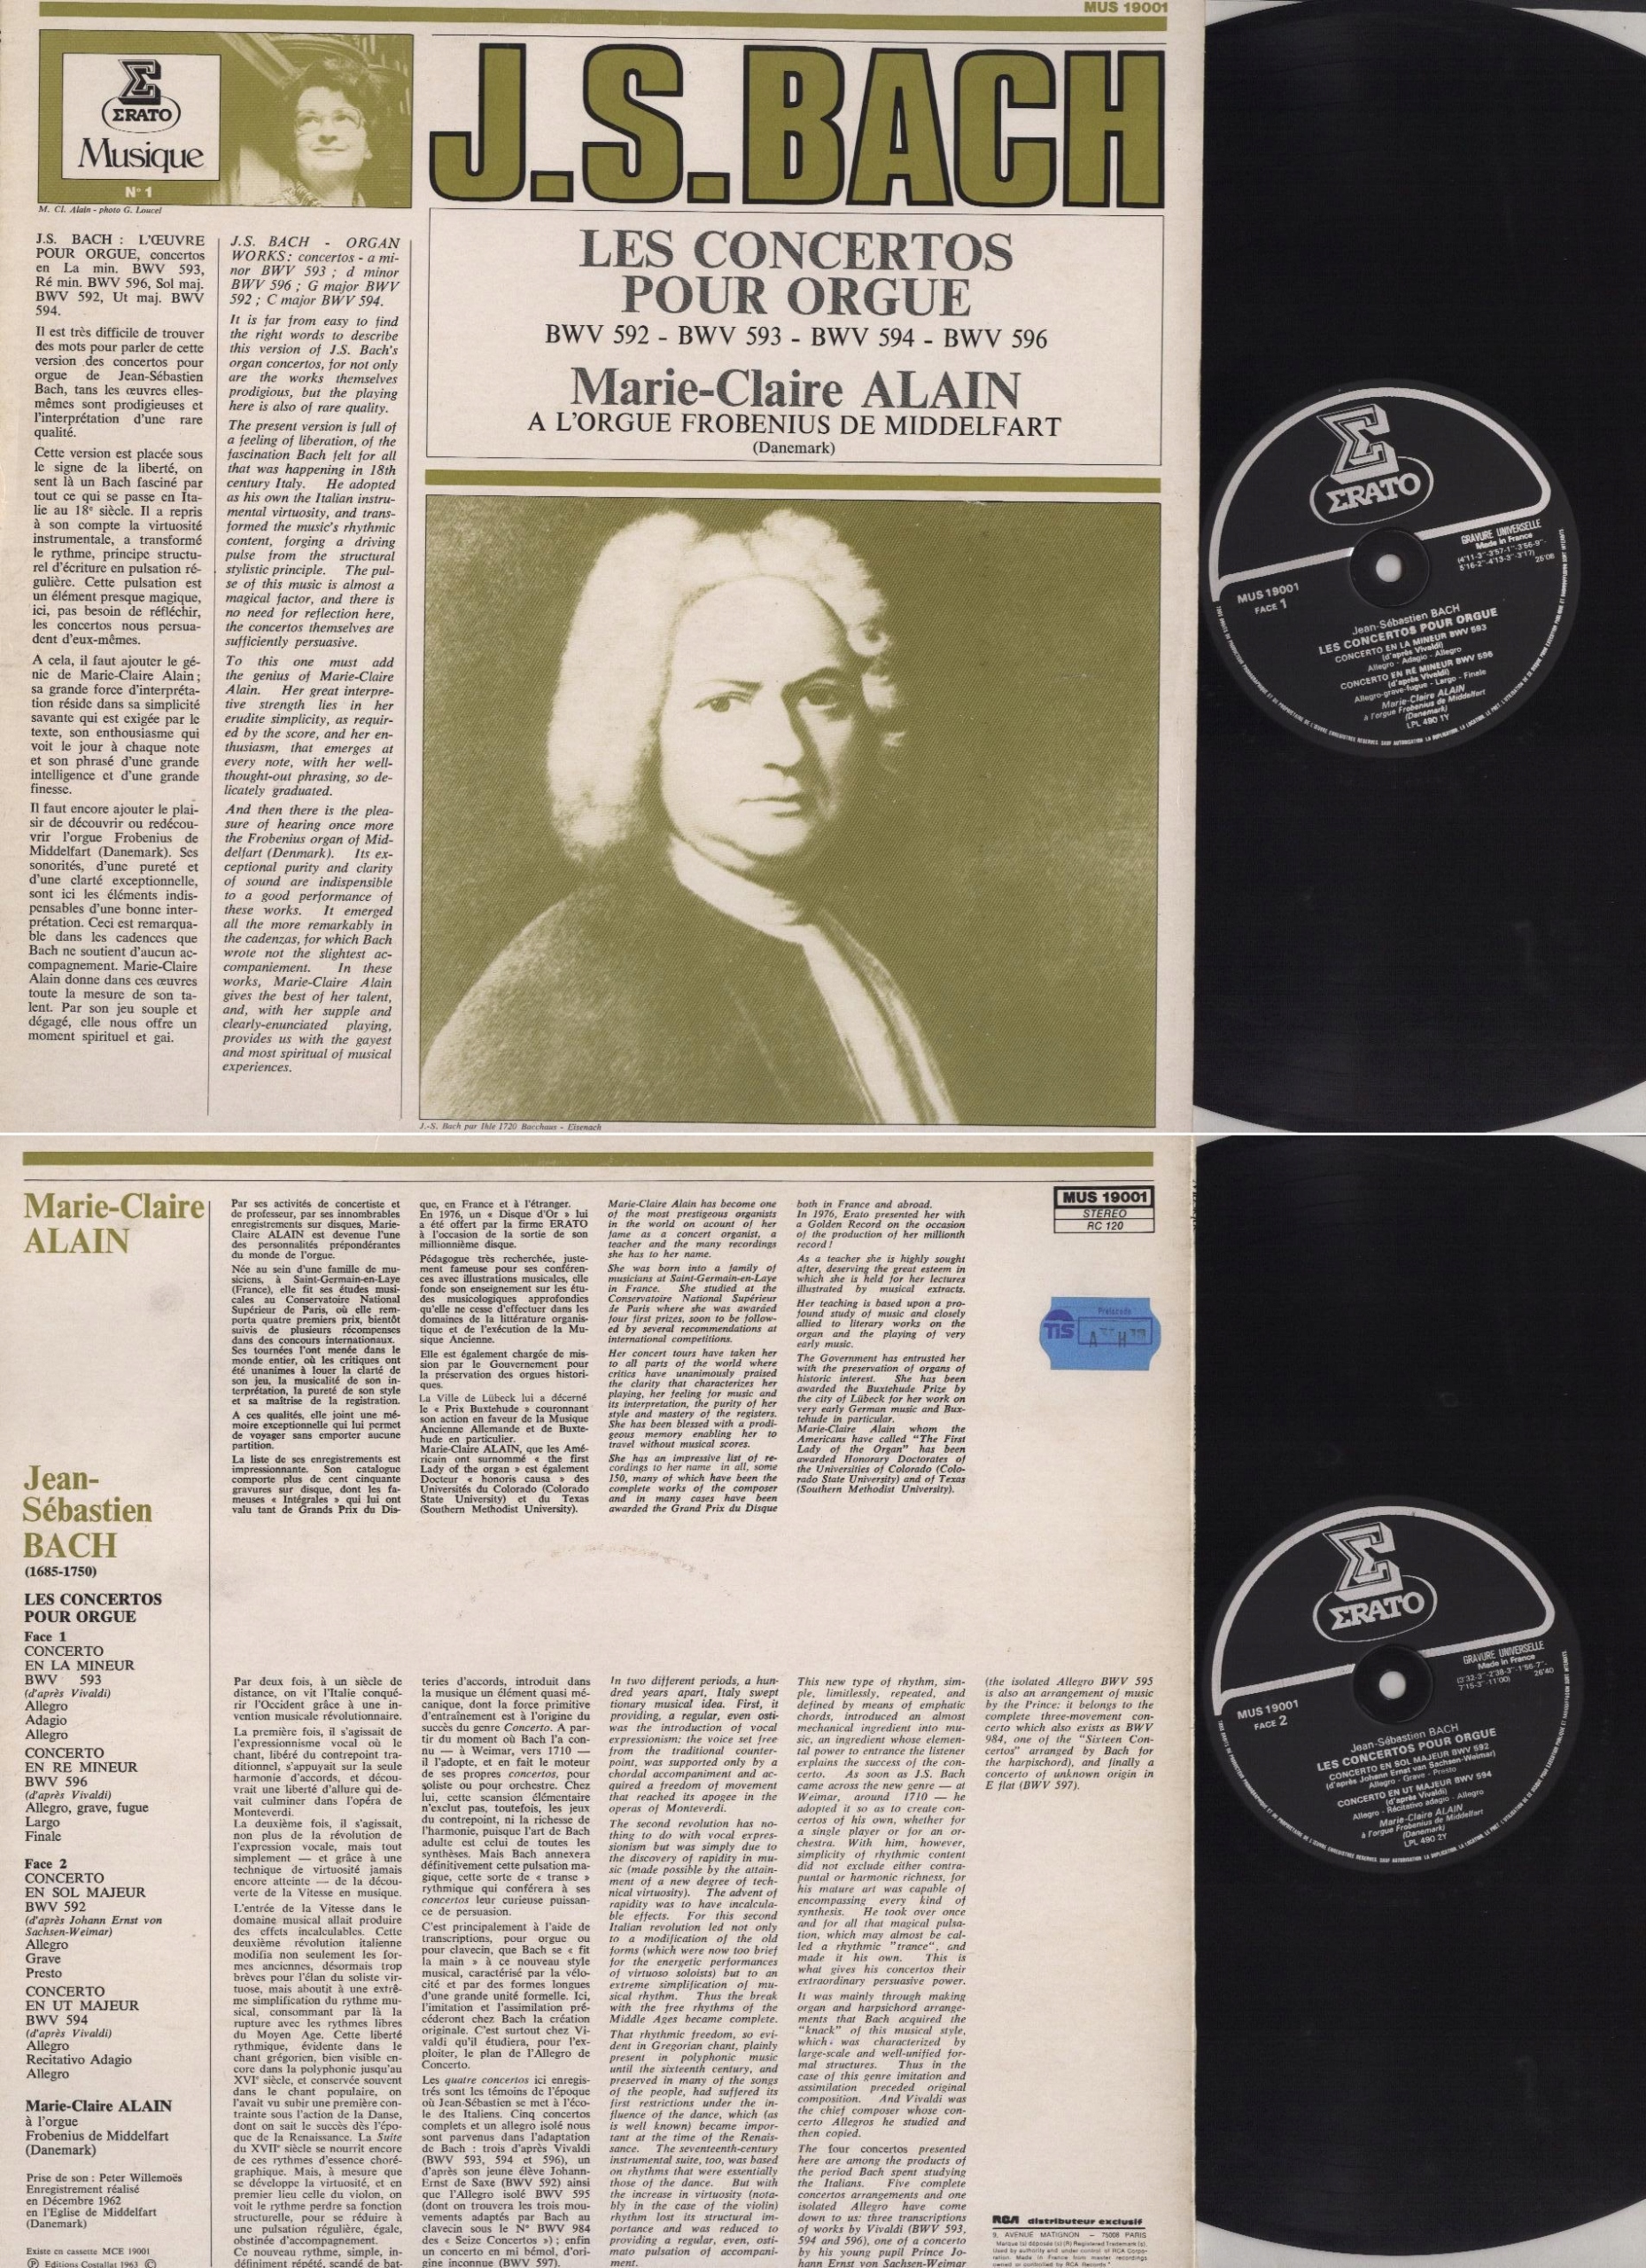 Marie-Claire Alain, Les Concertos Pour Orgue, LP EX